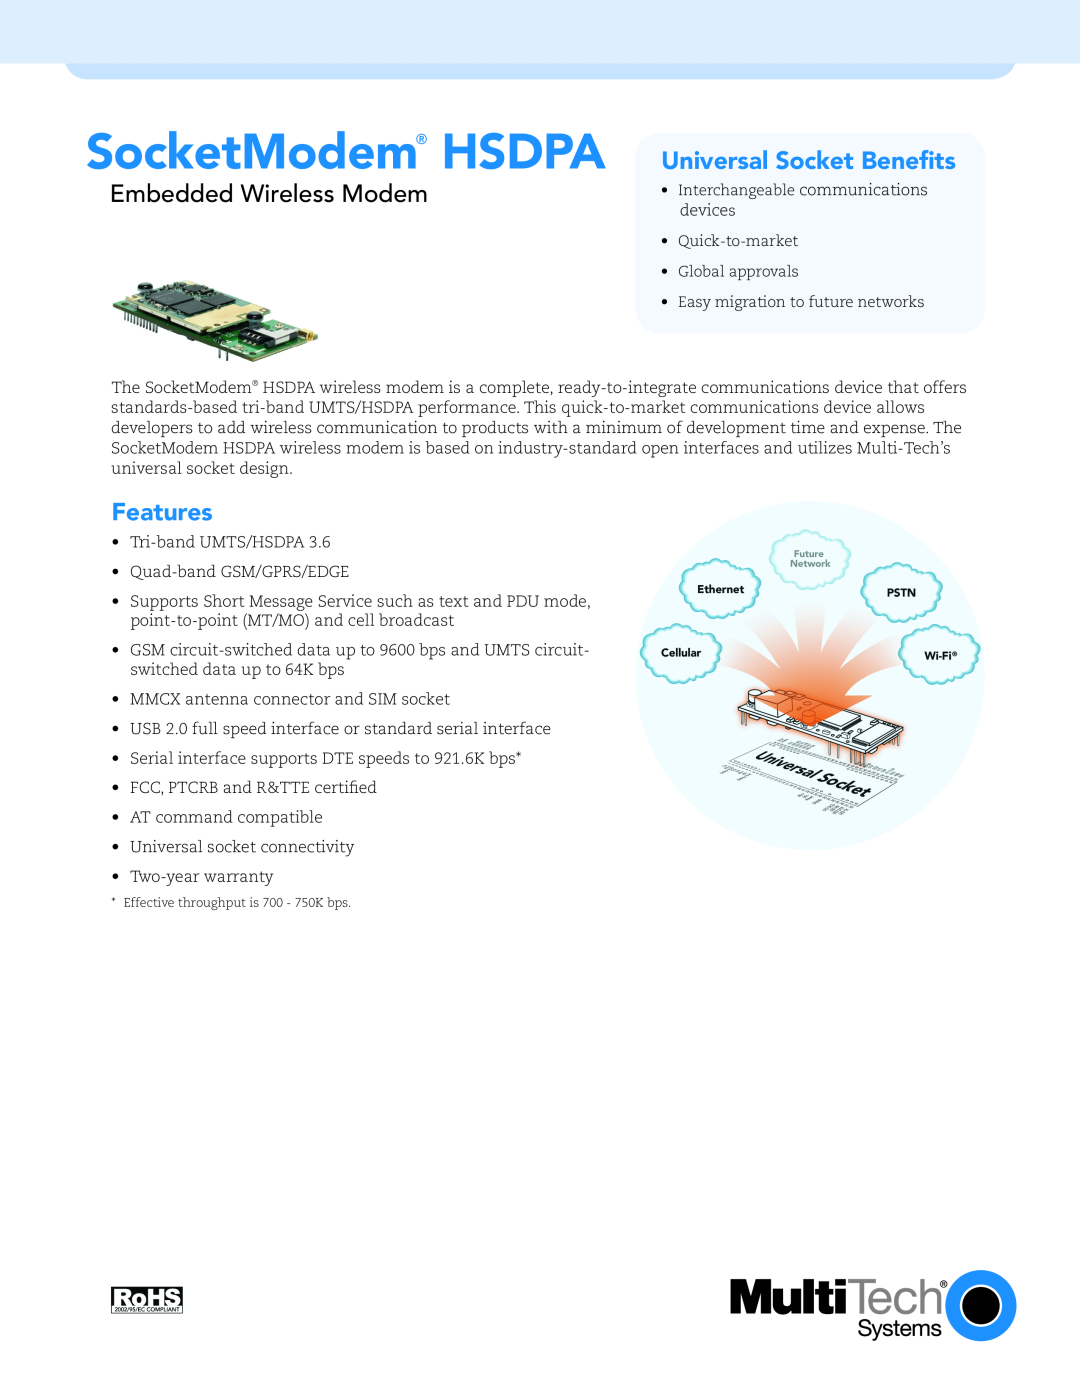 Multi-Tech Systems UL60950-1 warranty SocketModem HSDPA Universal Socket Benefits, Embedded Wireless Modem, Features 